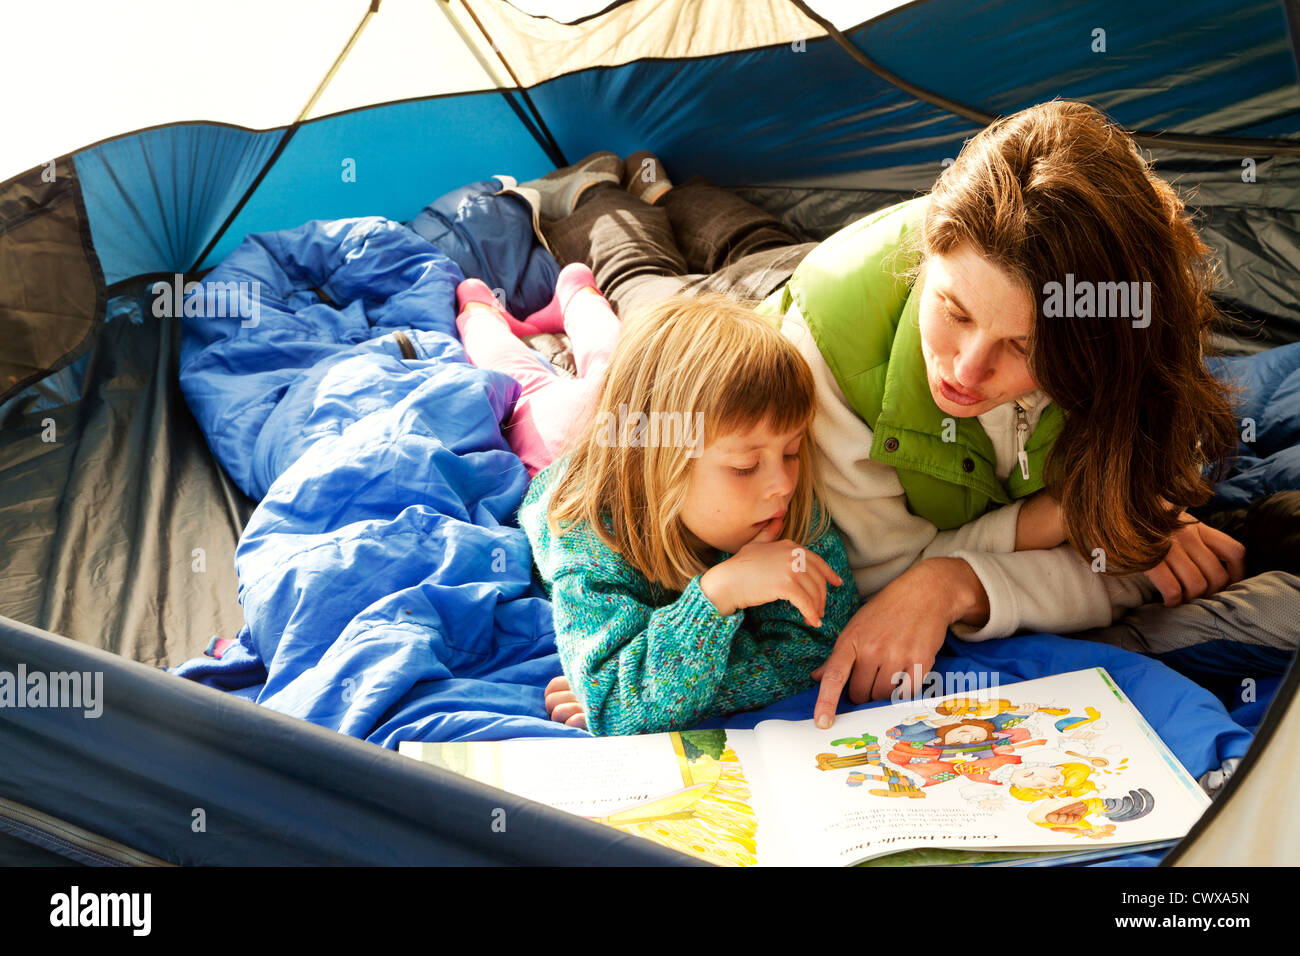 La mère et la fille sont couchés dans une tente la lecture. Banque D'Images